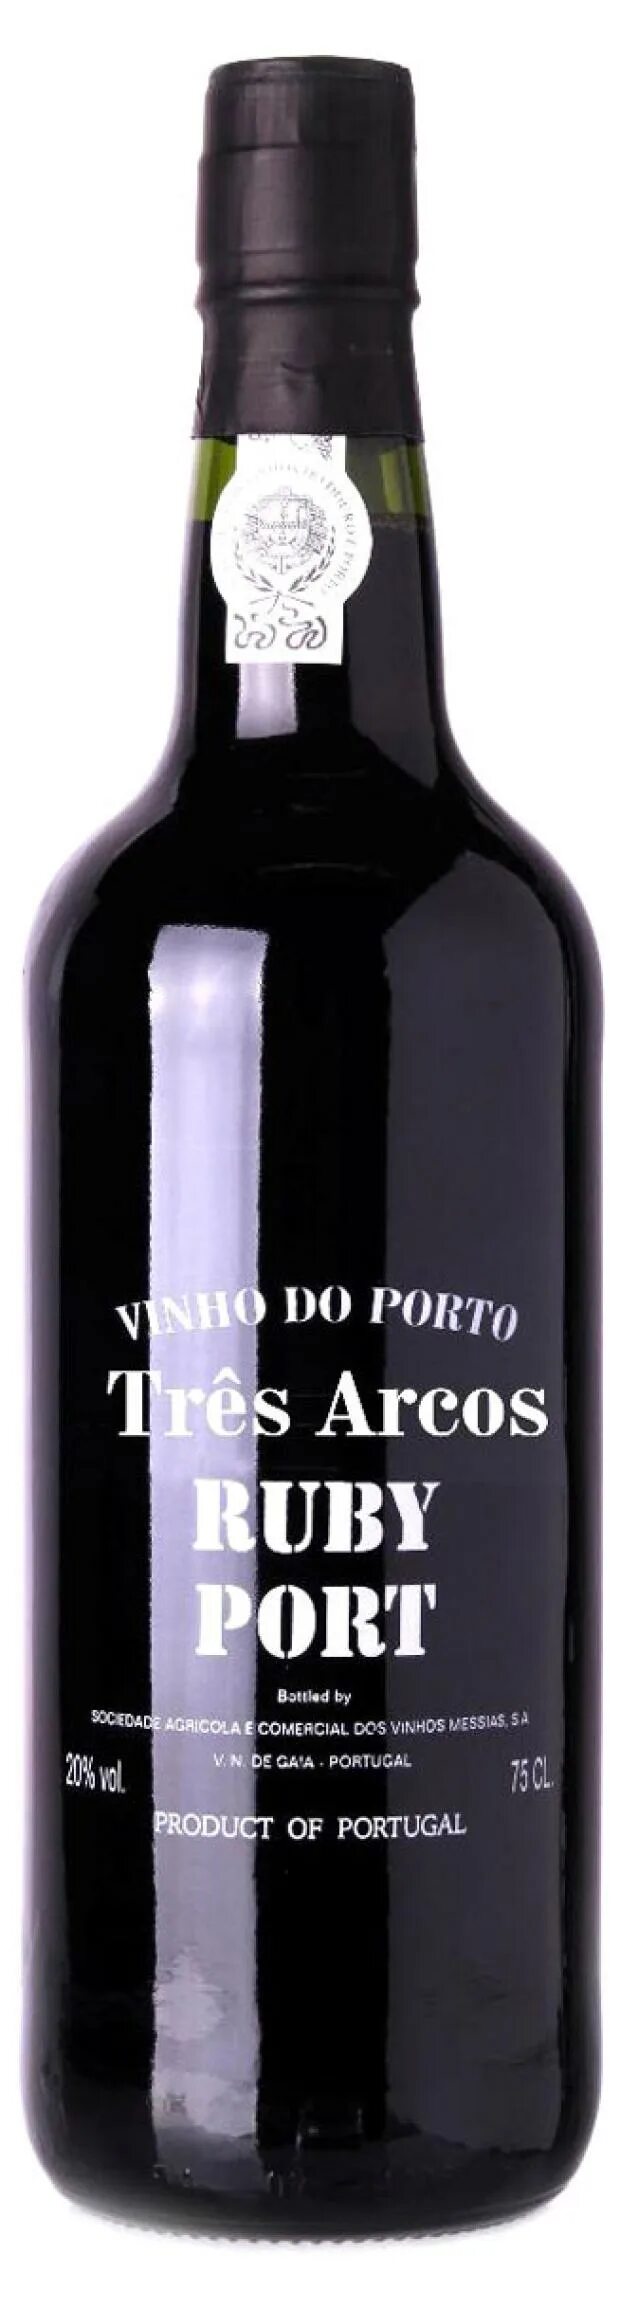 Руби порт. 0,75 Трес аркуш Руби Порто ликерное вино. Вино ликерное Порто Руби. Портвейн португальский Порто Руби. Трес Аркос портвейн.